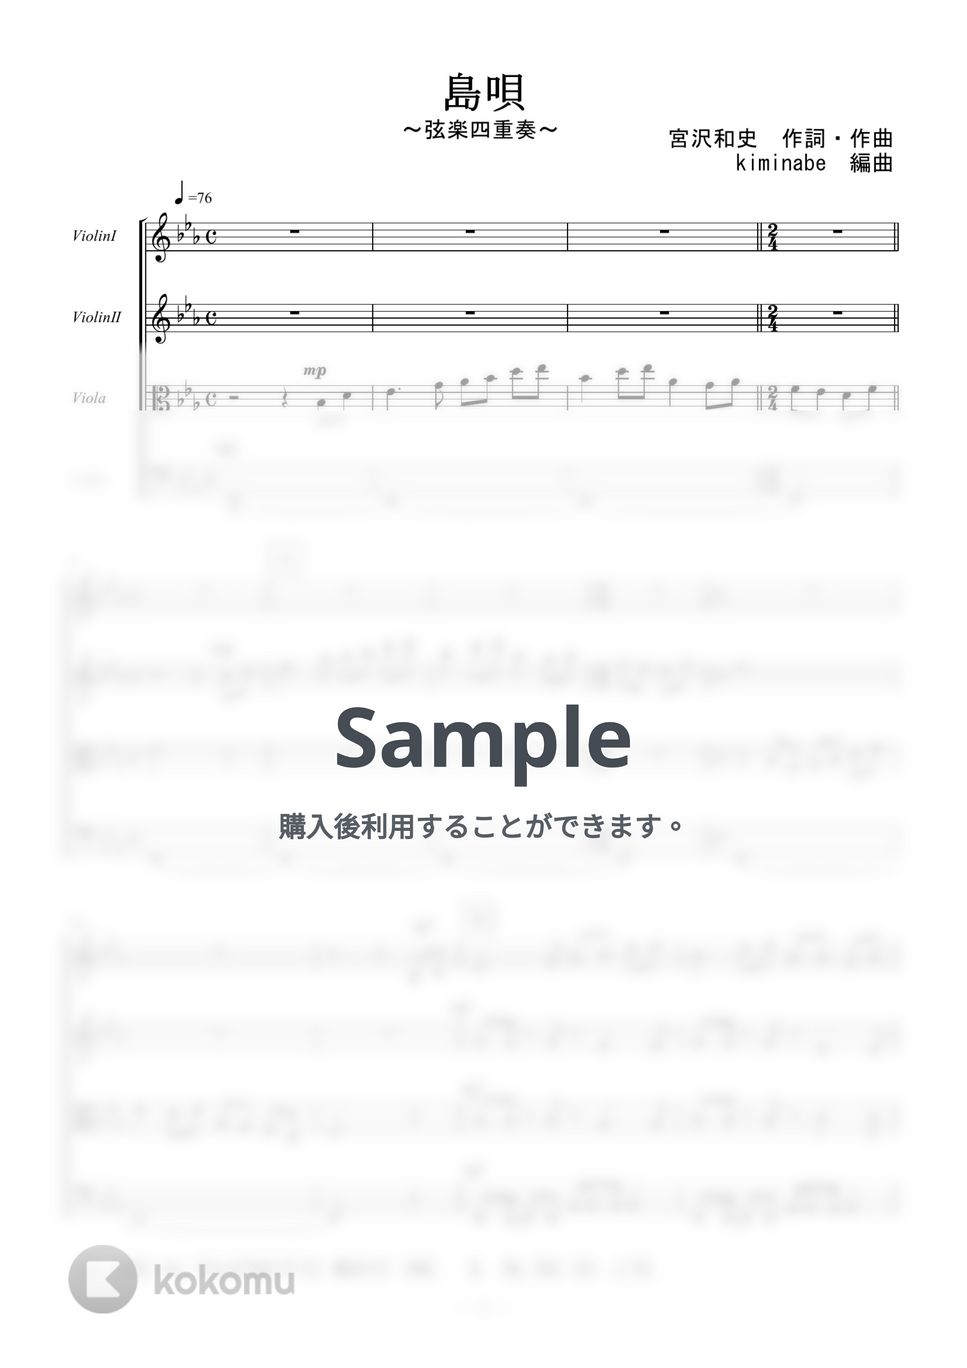 宮沢和史 - 島唄 (弦楽四重奏) by kiminabe